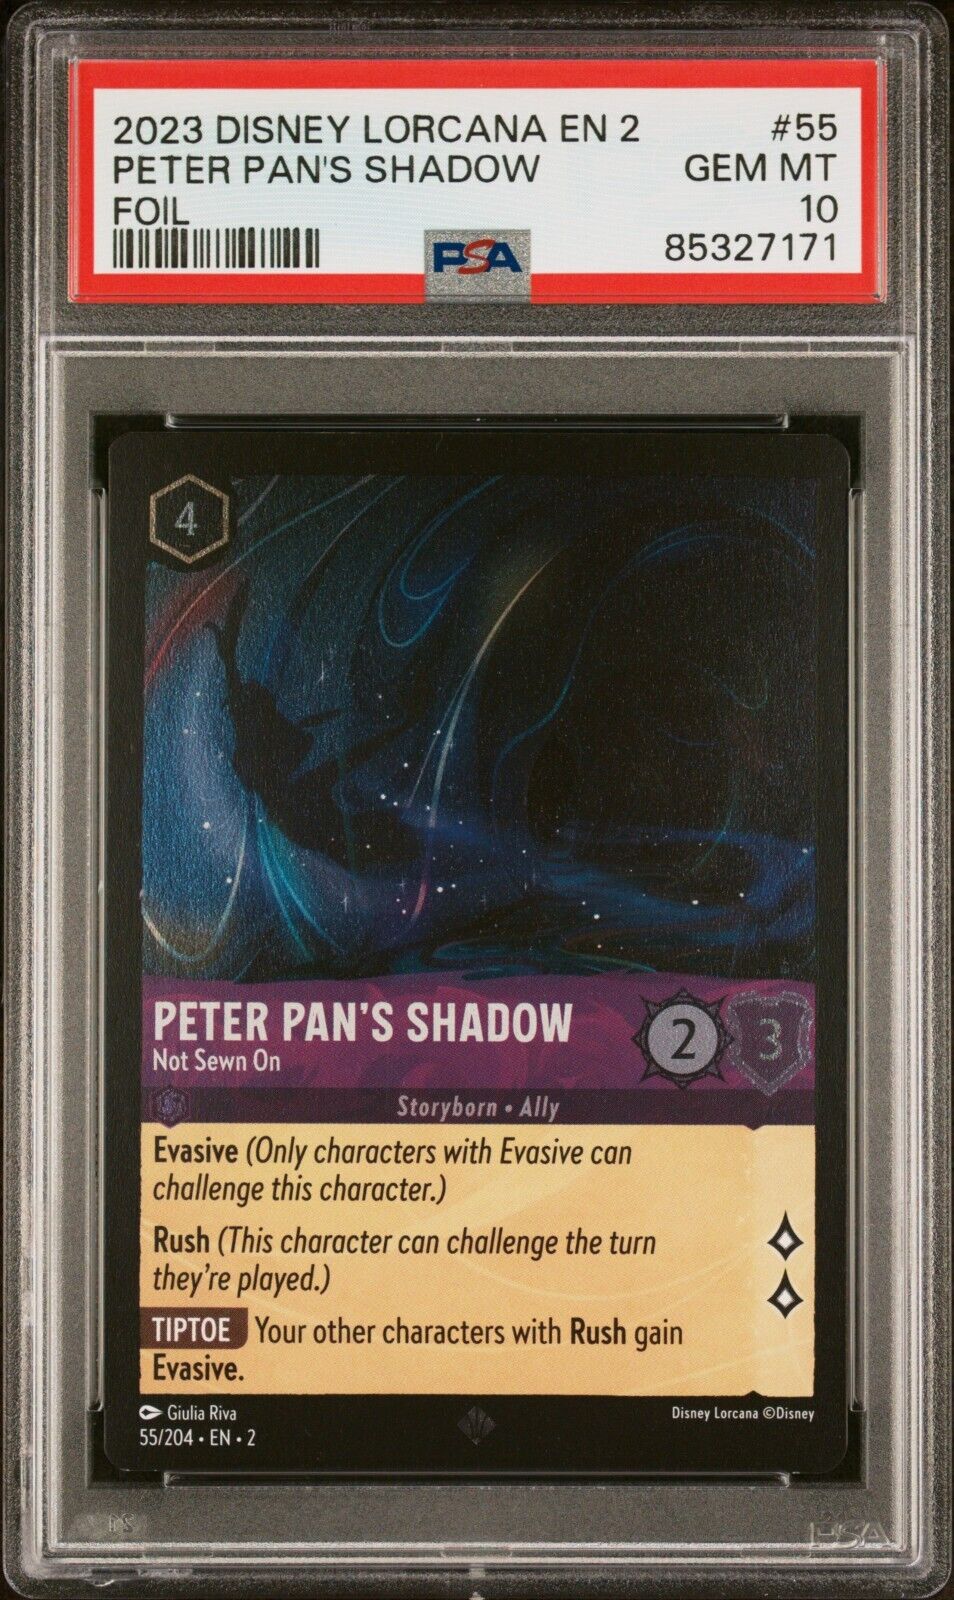 2023 Disney Lorcana #55 - Peter Pan’s Shadow Not Sewn On - Foil PSA 10 GEM